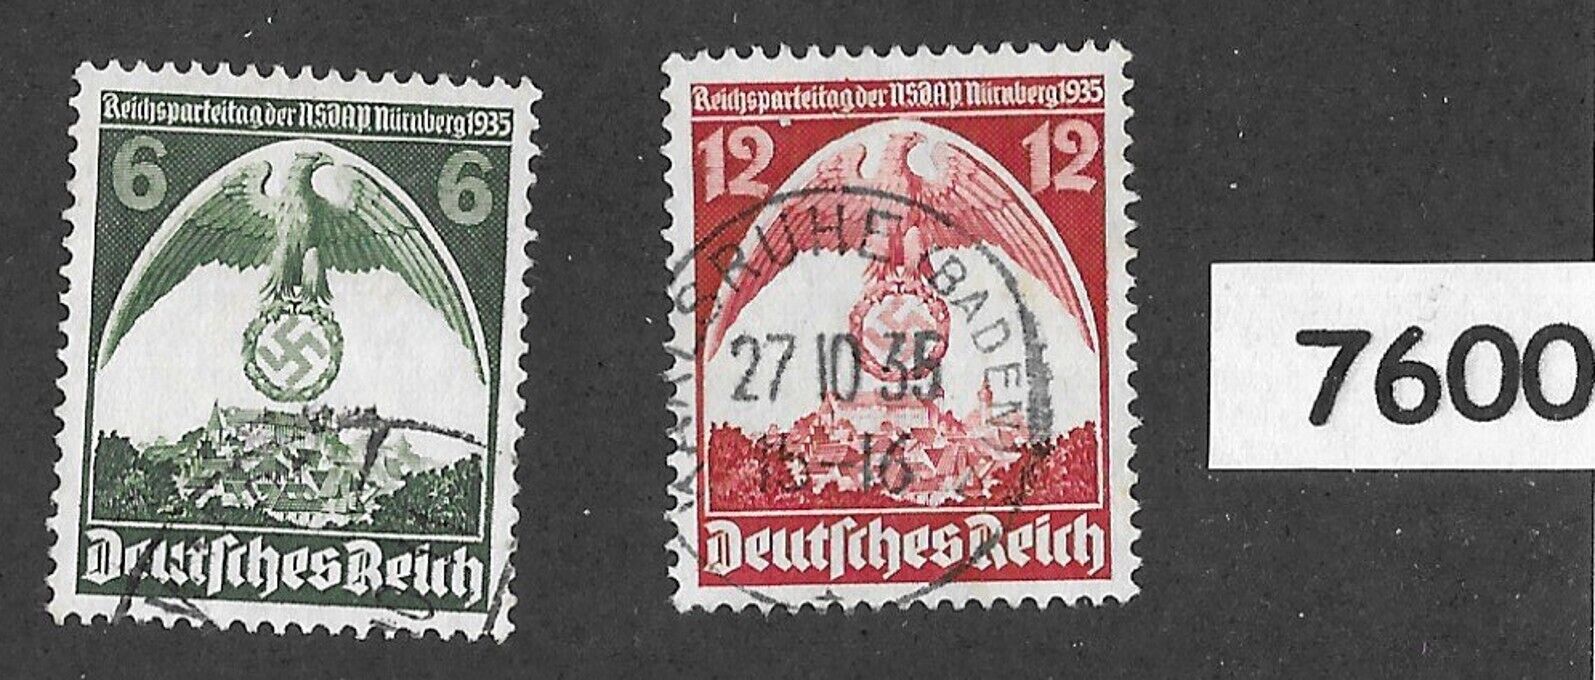 #7600   Stamp set 1935 Nuremberg party congress Third Reich Germany Sc 465-466